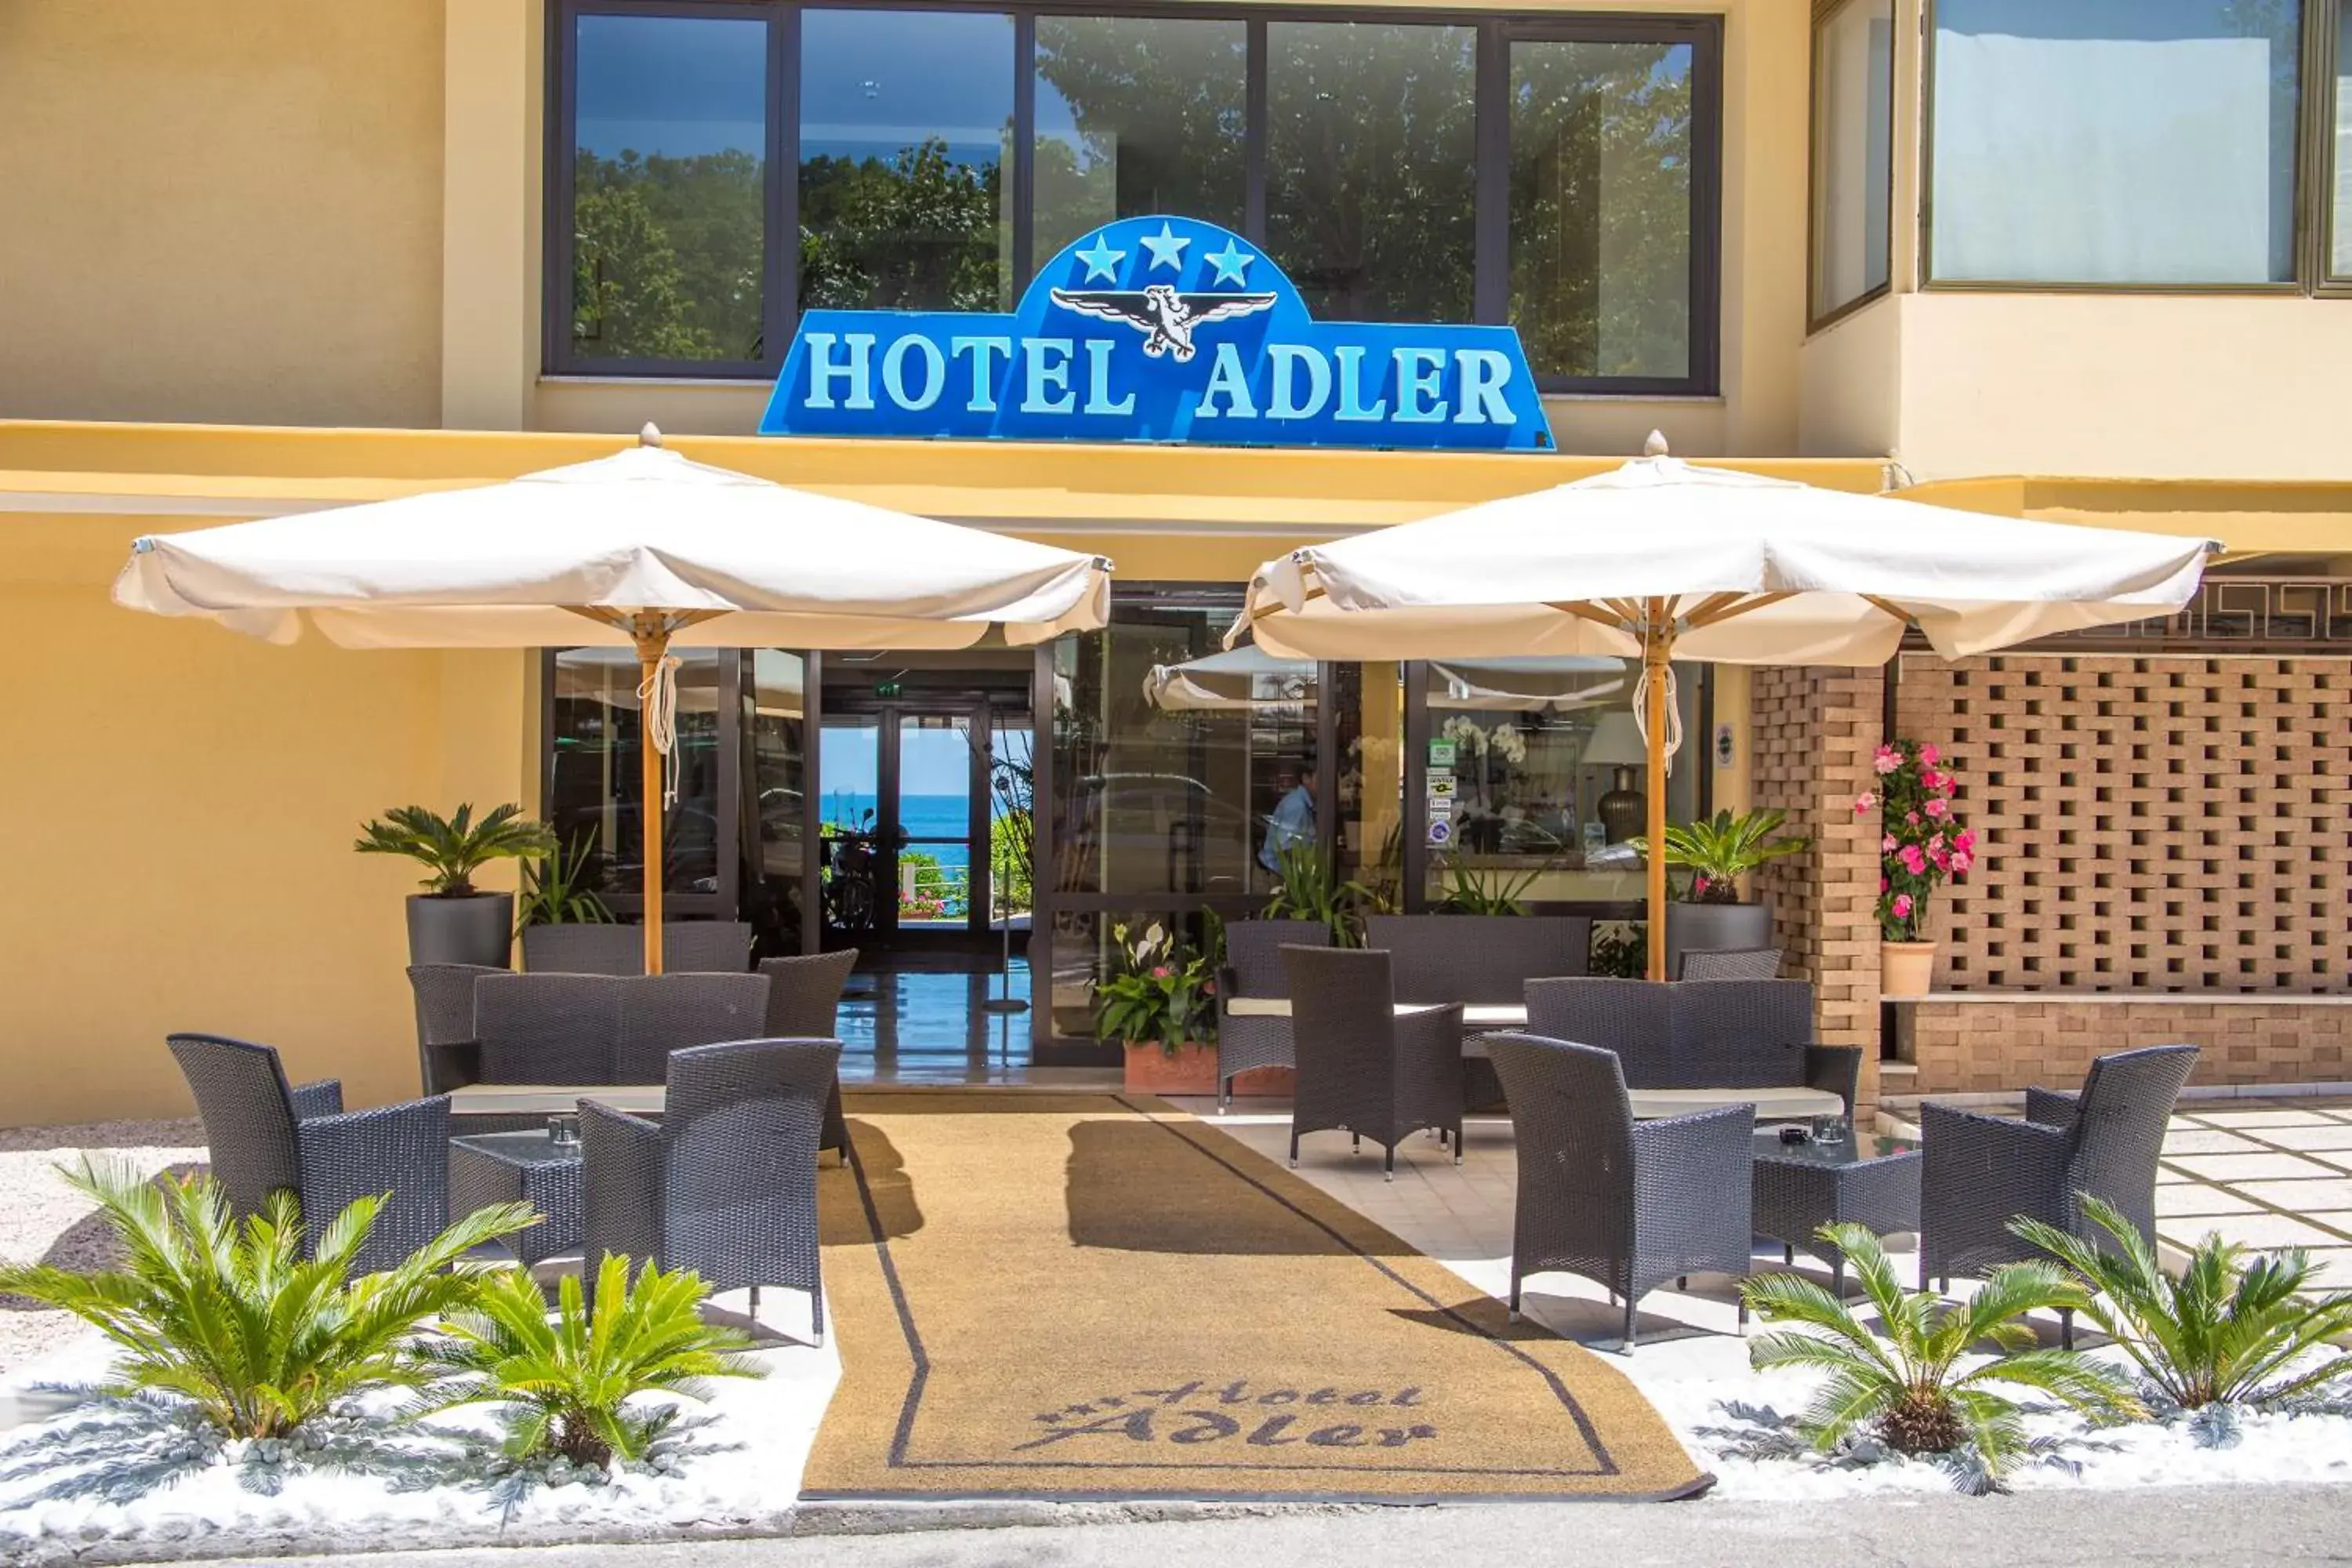 Facade/entrance in Hotel Adler